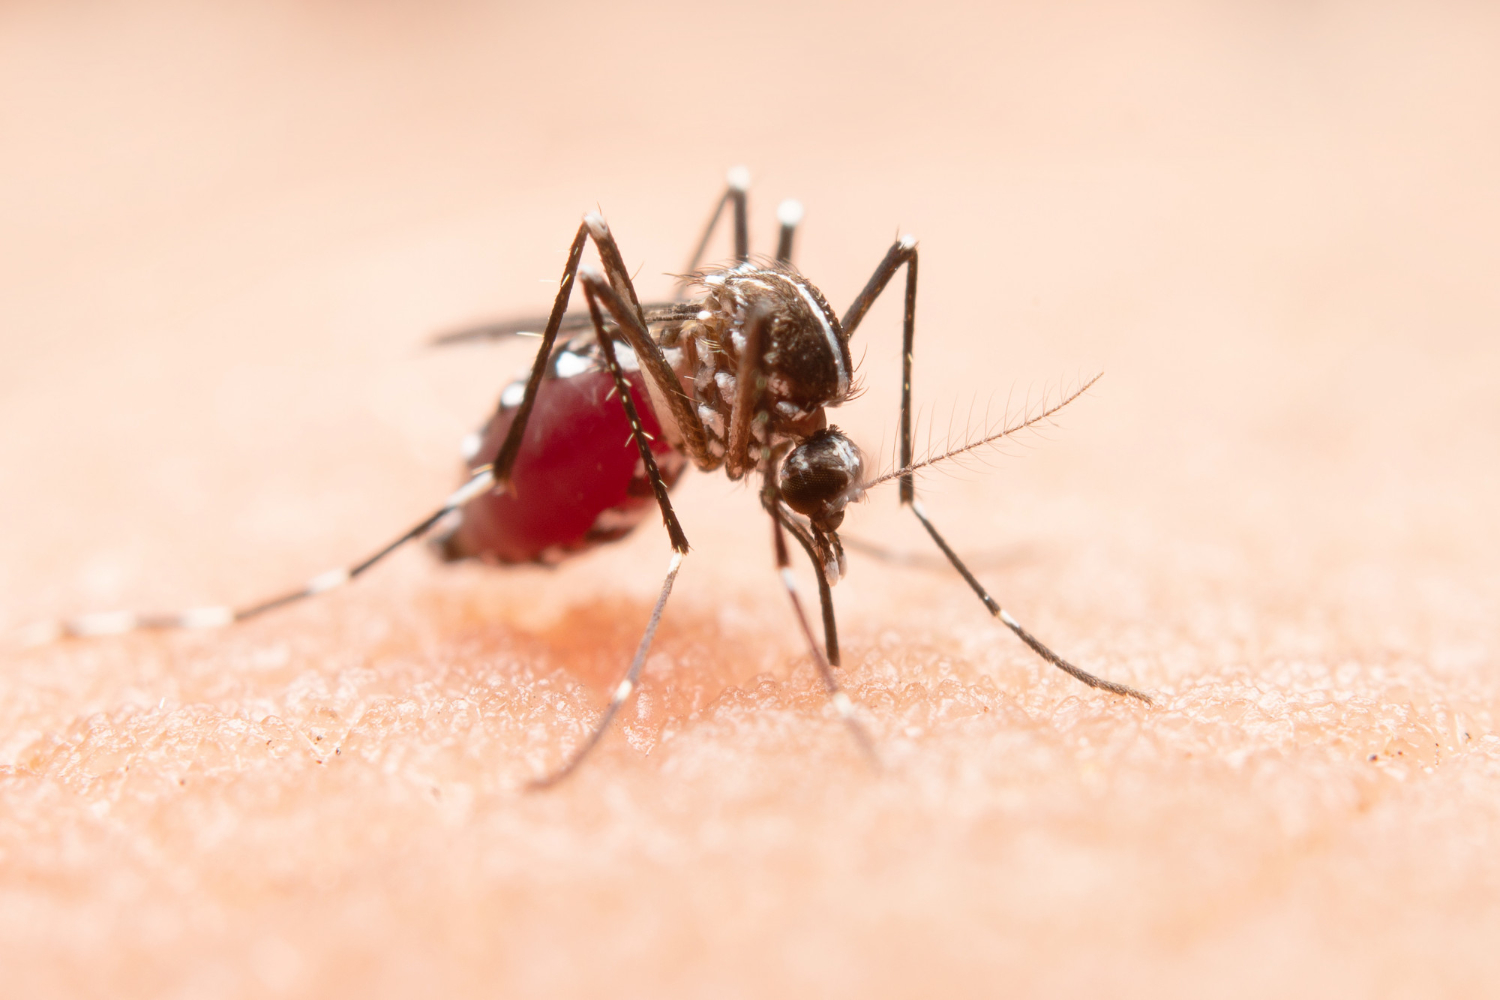 Dengue Fever: Signs and Symptoms